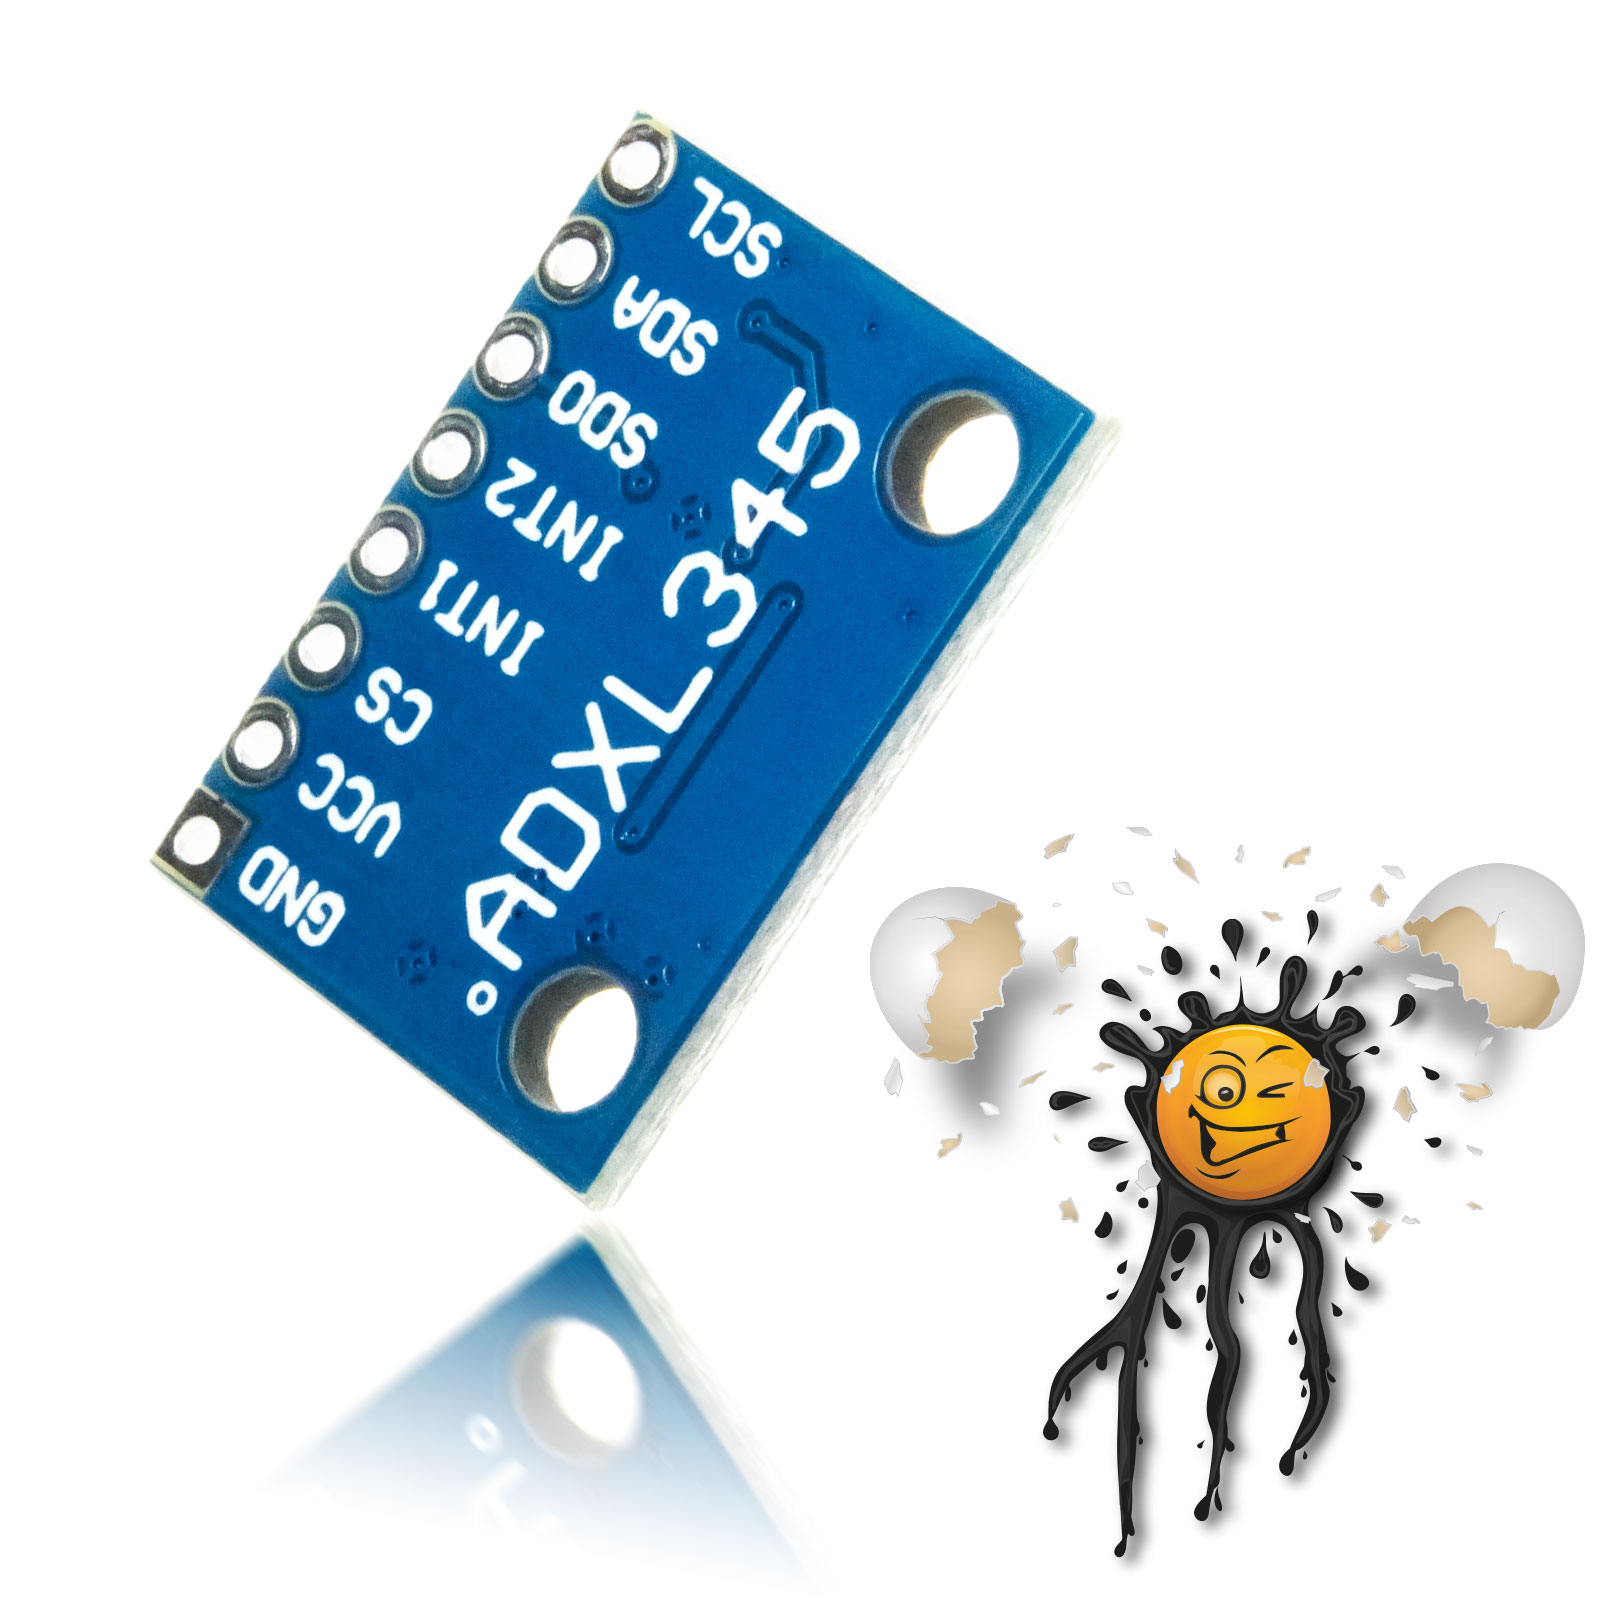 ADXL345 accelerometer sensor module